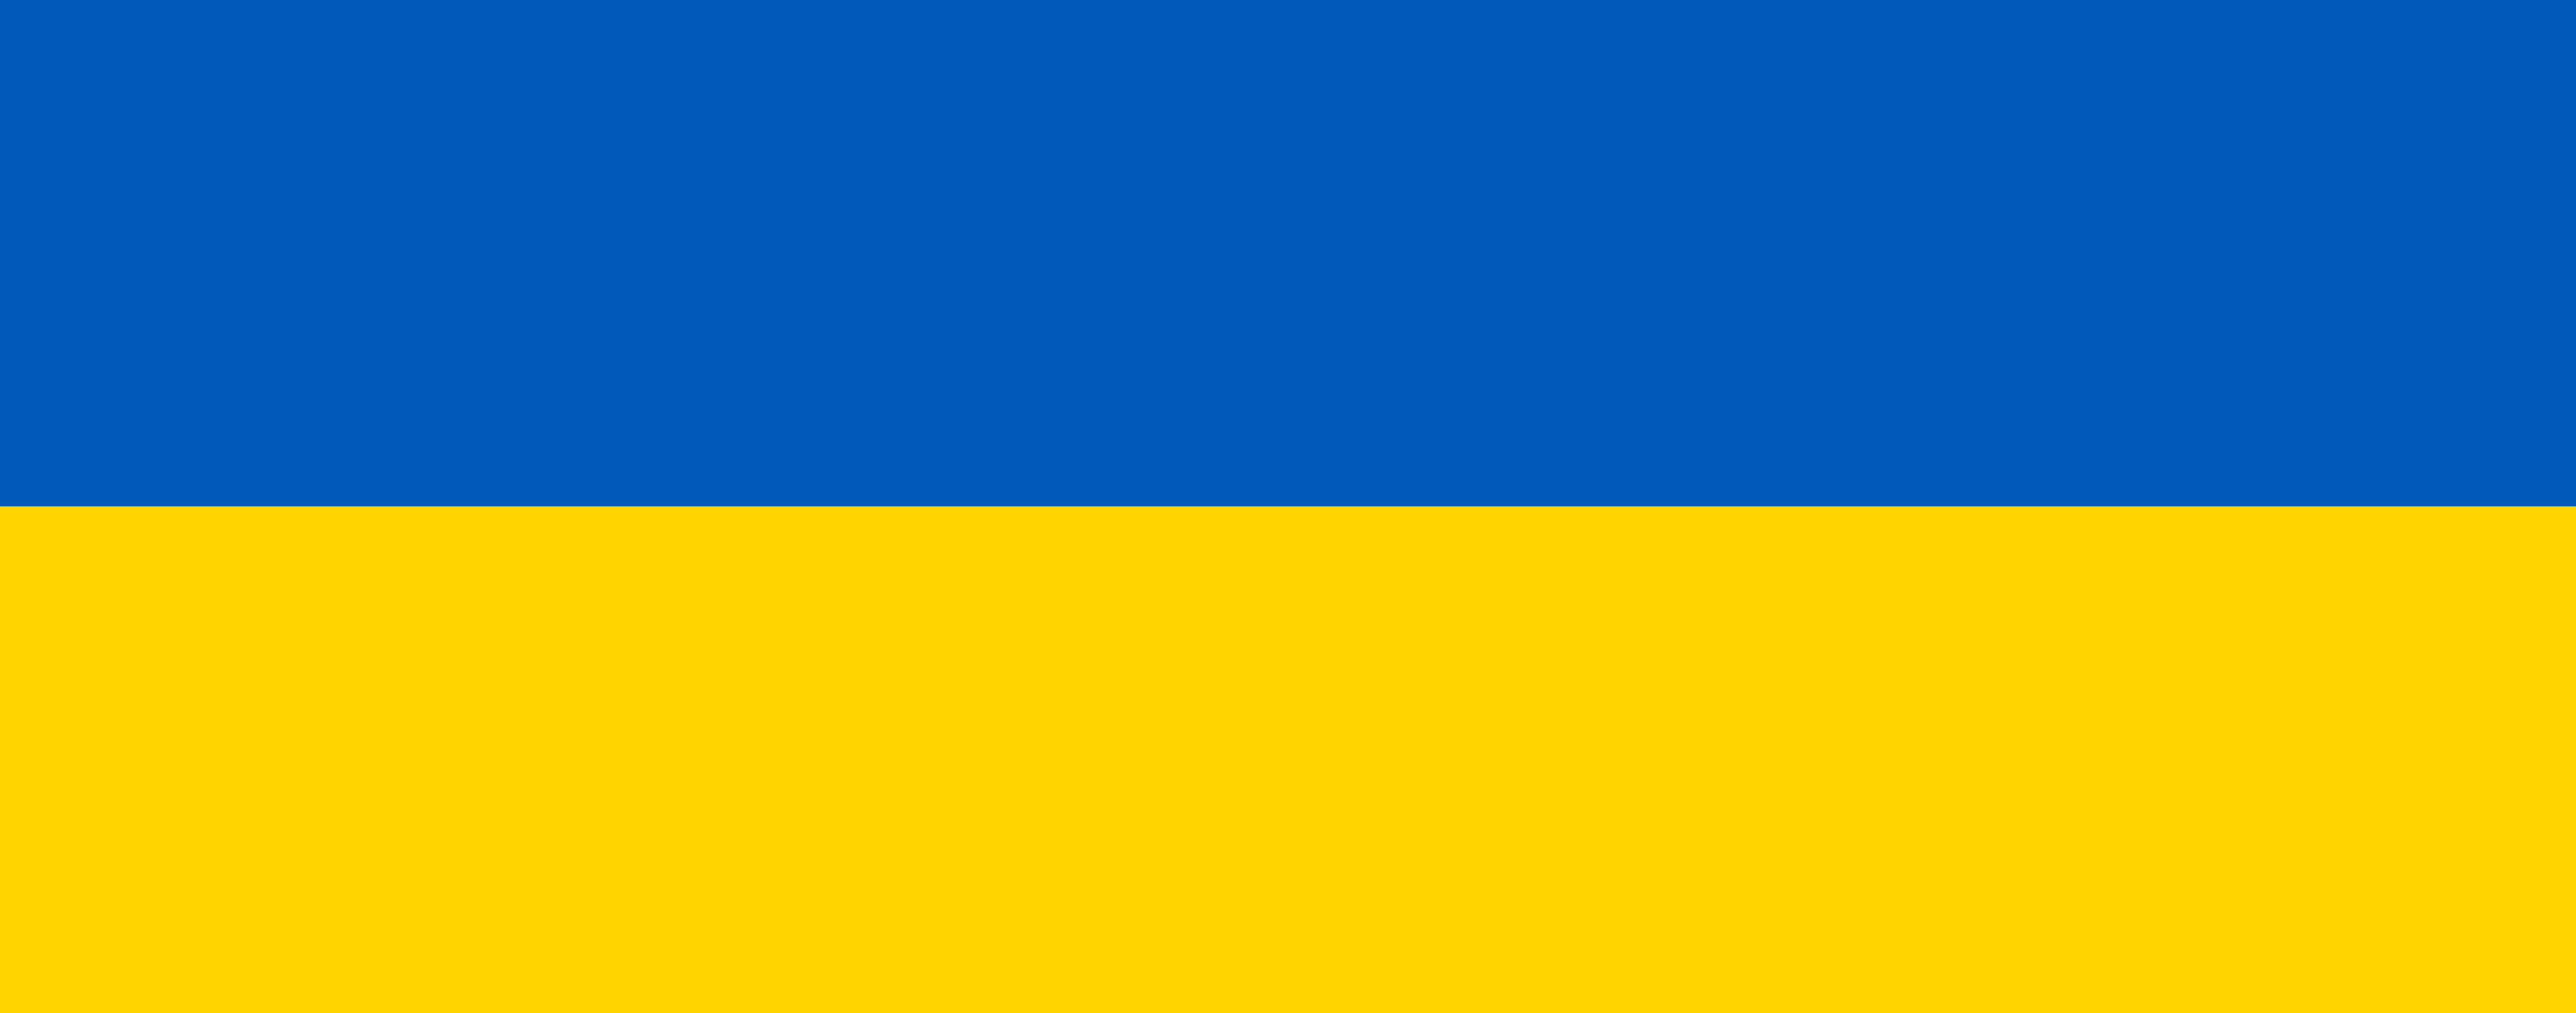 Flaga Ukrainy - niebieska o góry na dole żółto